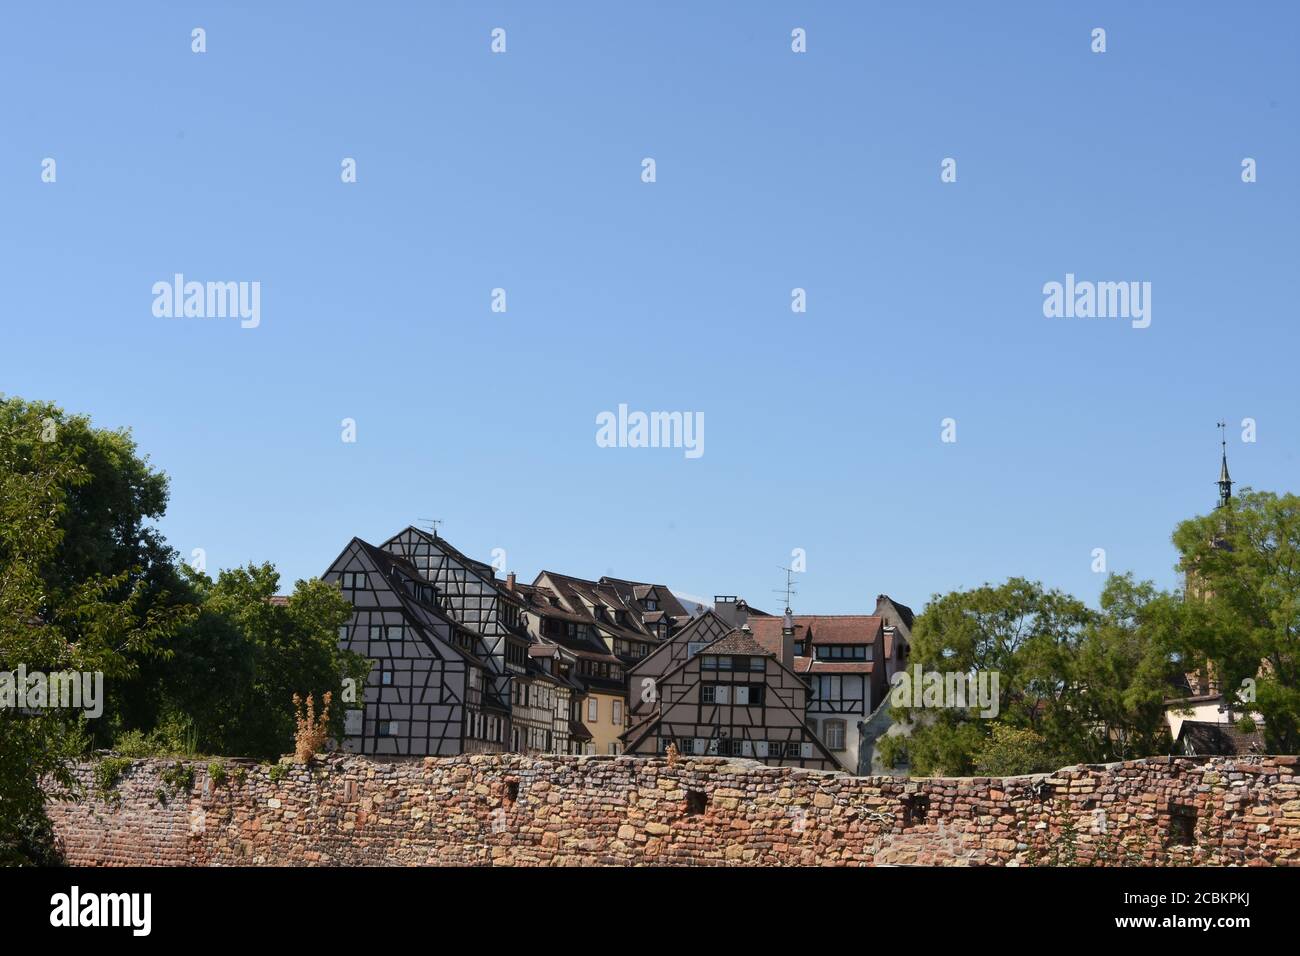 Edifici medievali e del primo Rinascimento a graticcio dietro le mura di mattoni rossi sotto il cielo blu a Colmar, una città nella regione del Grand Est della Francia. Foto Stock